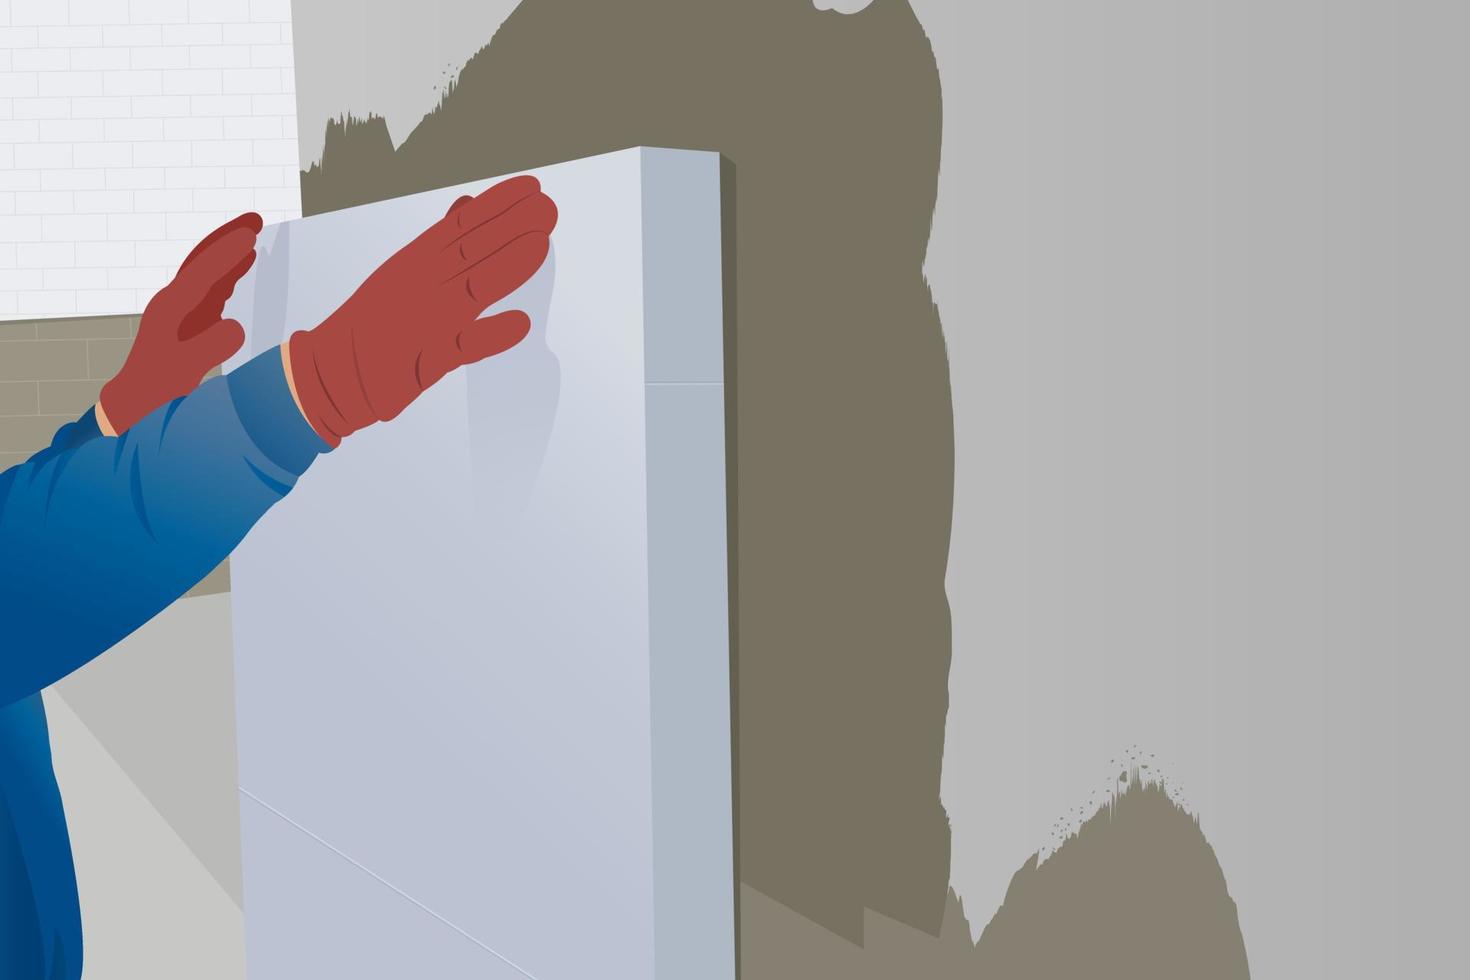 el trabajador instala láminas de aislamiento térmico de espuma de poliestireno en la pared de la fachada de la casa para protección térmica, renovación del hogar vector